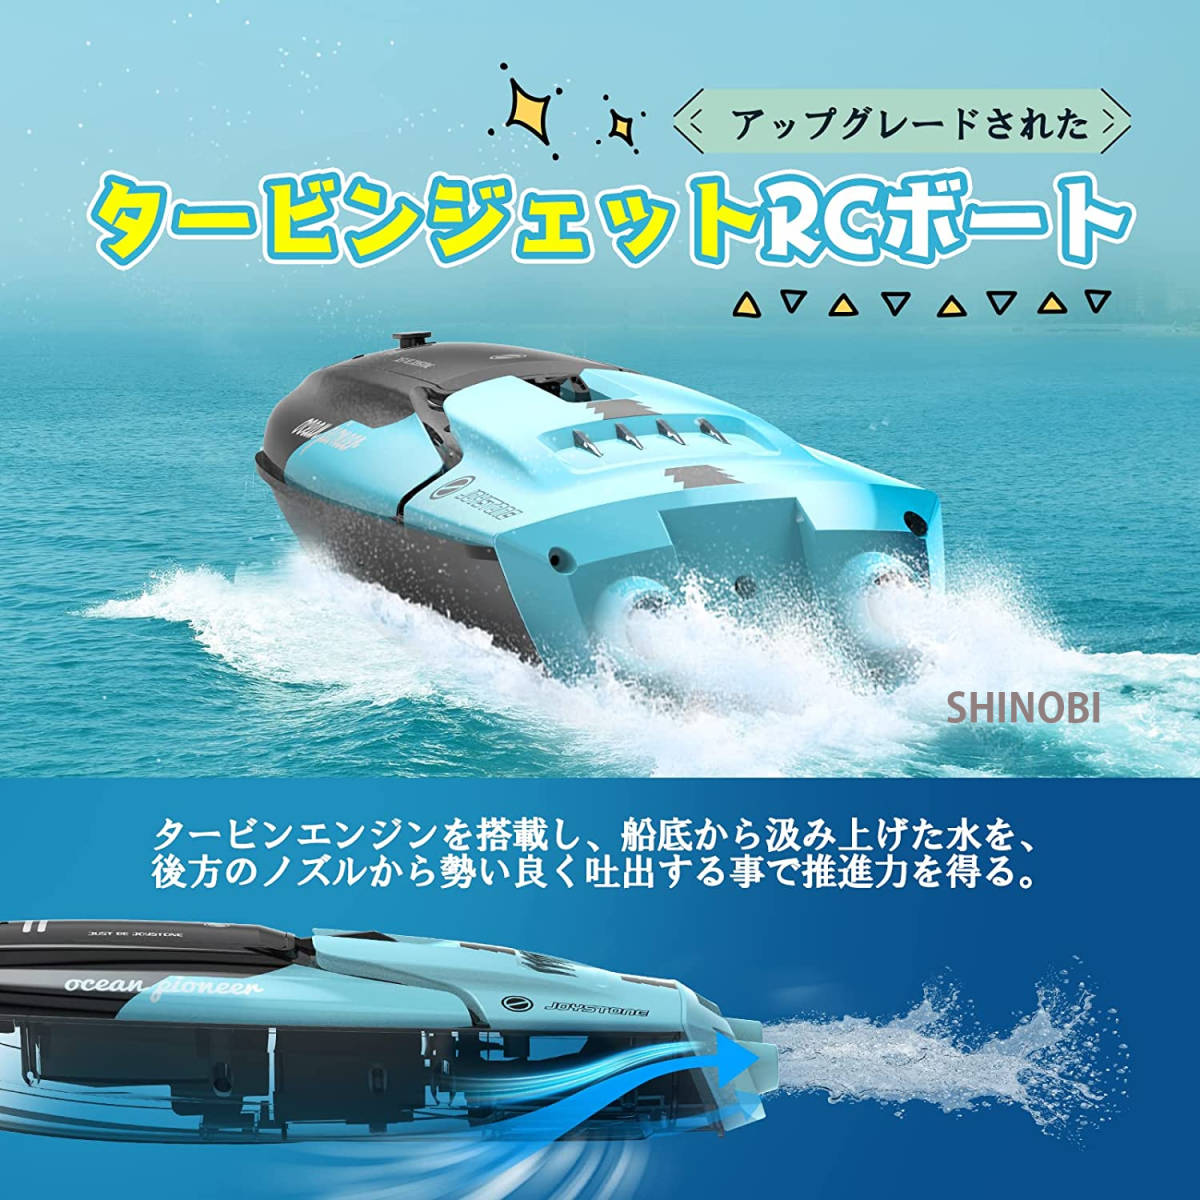 新版 RCボート ラジコンボート タービンモーター 2.4GHz無線操作 LEDライト デモモード 可変速20km/h 低電圧アラーム ワンキーで転覆回復 防水 船、ボート